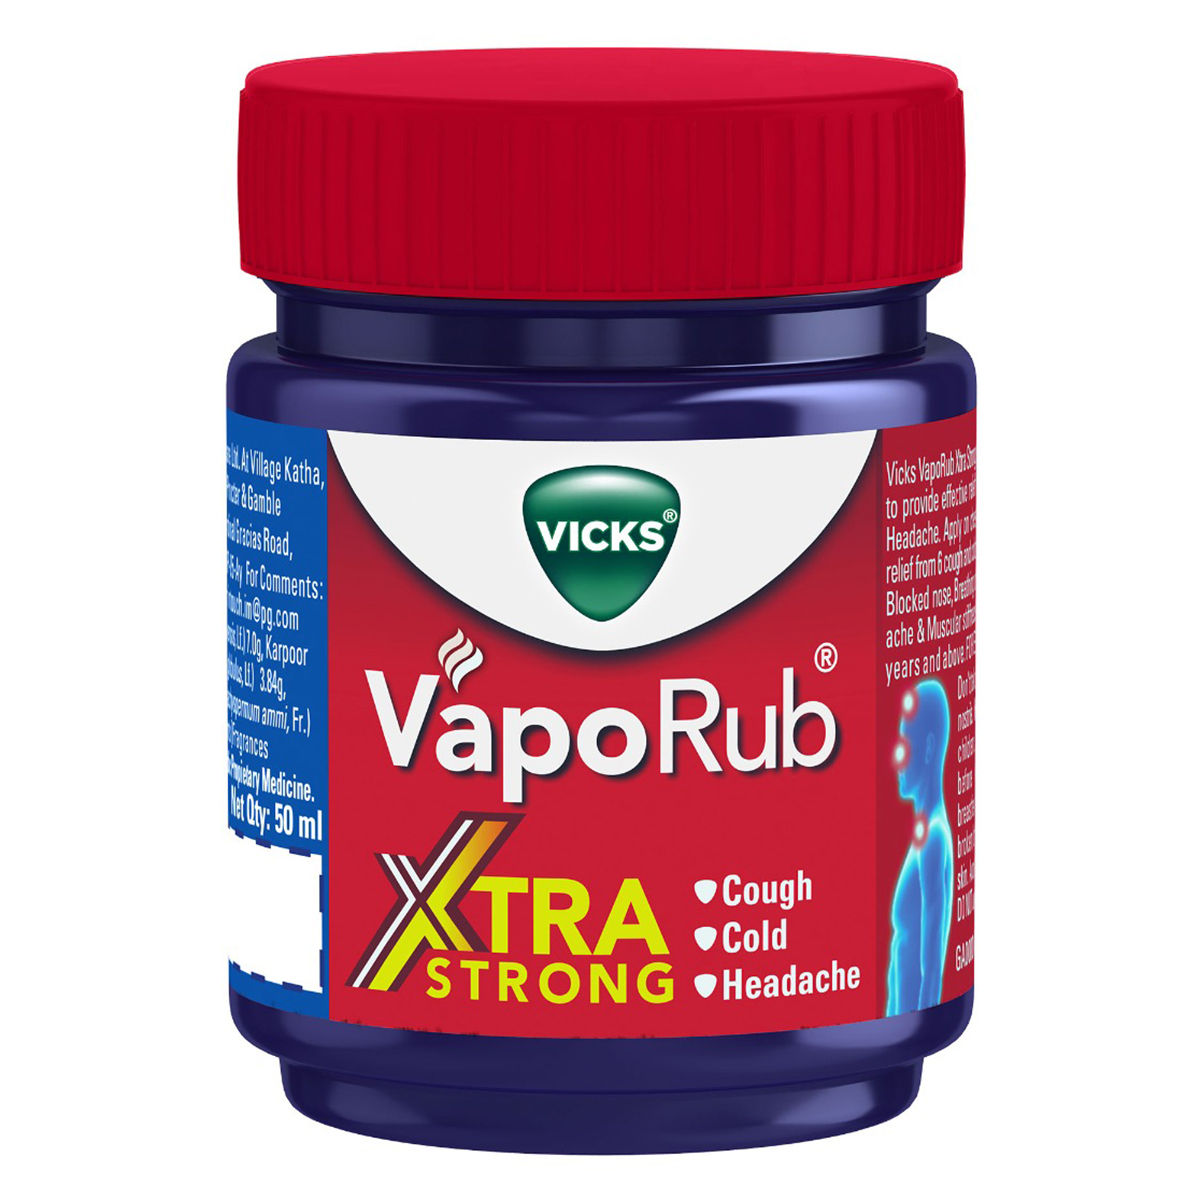 Vicks VapoRub Vapour Rub Congestion Cold Headache Relief Menthol